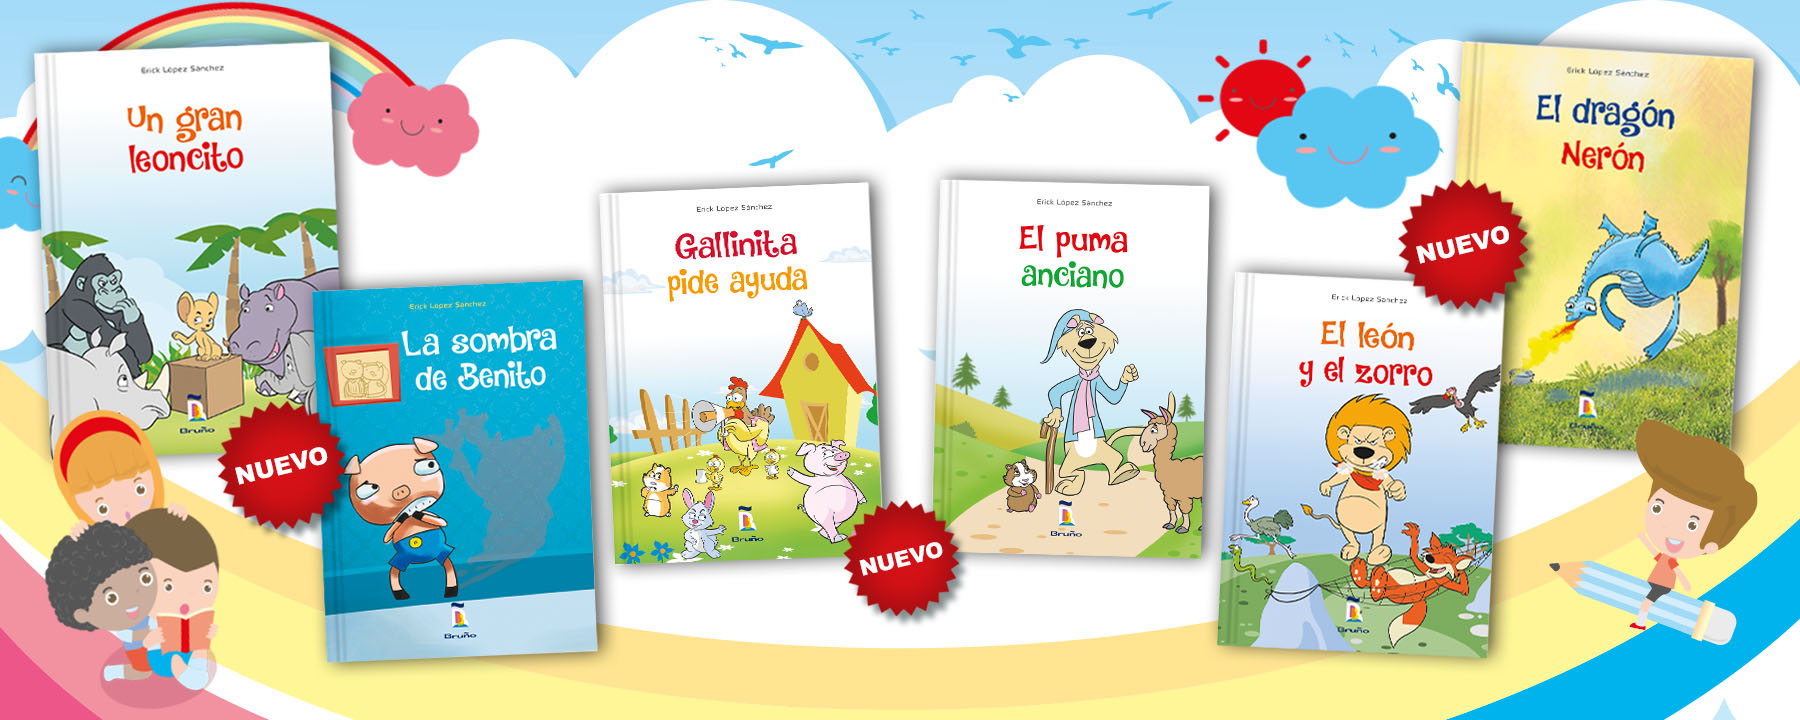 No te pierdas estos excelentes títulos para niños de Inicial de nuestro autor Erick López Sánchez.